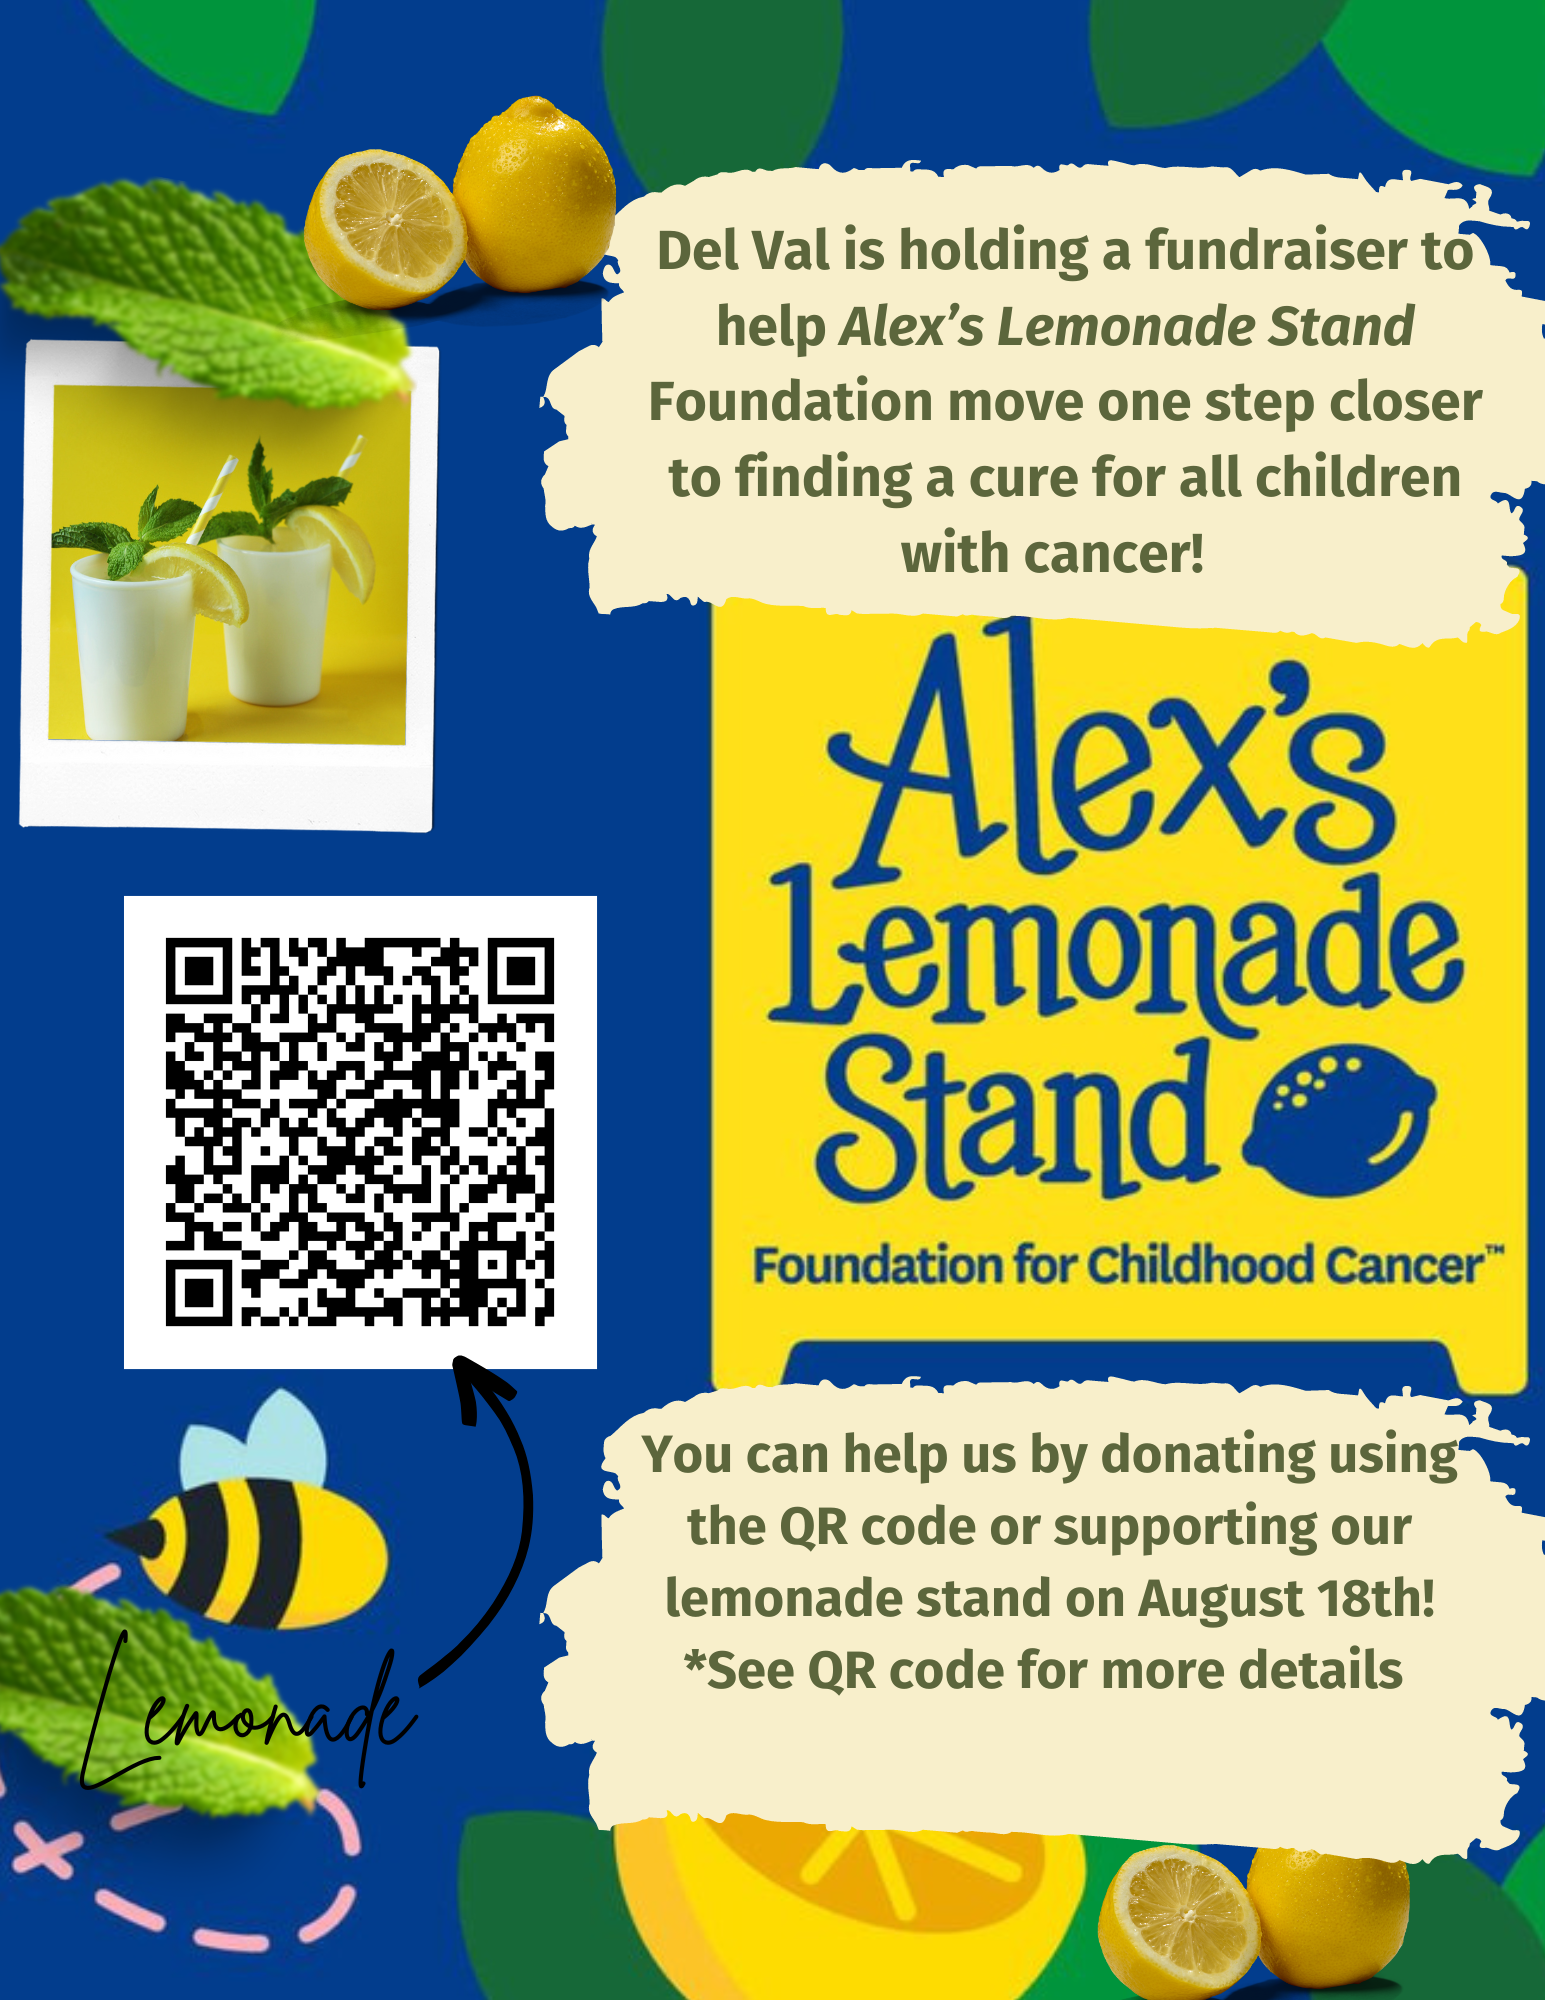 Alex’s Lemonade Stand Foundation